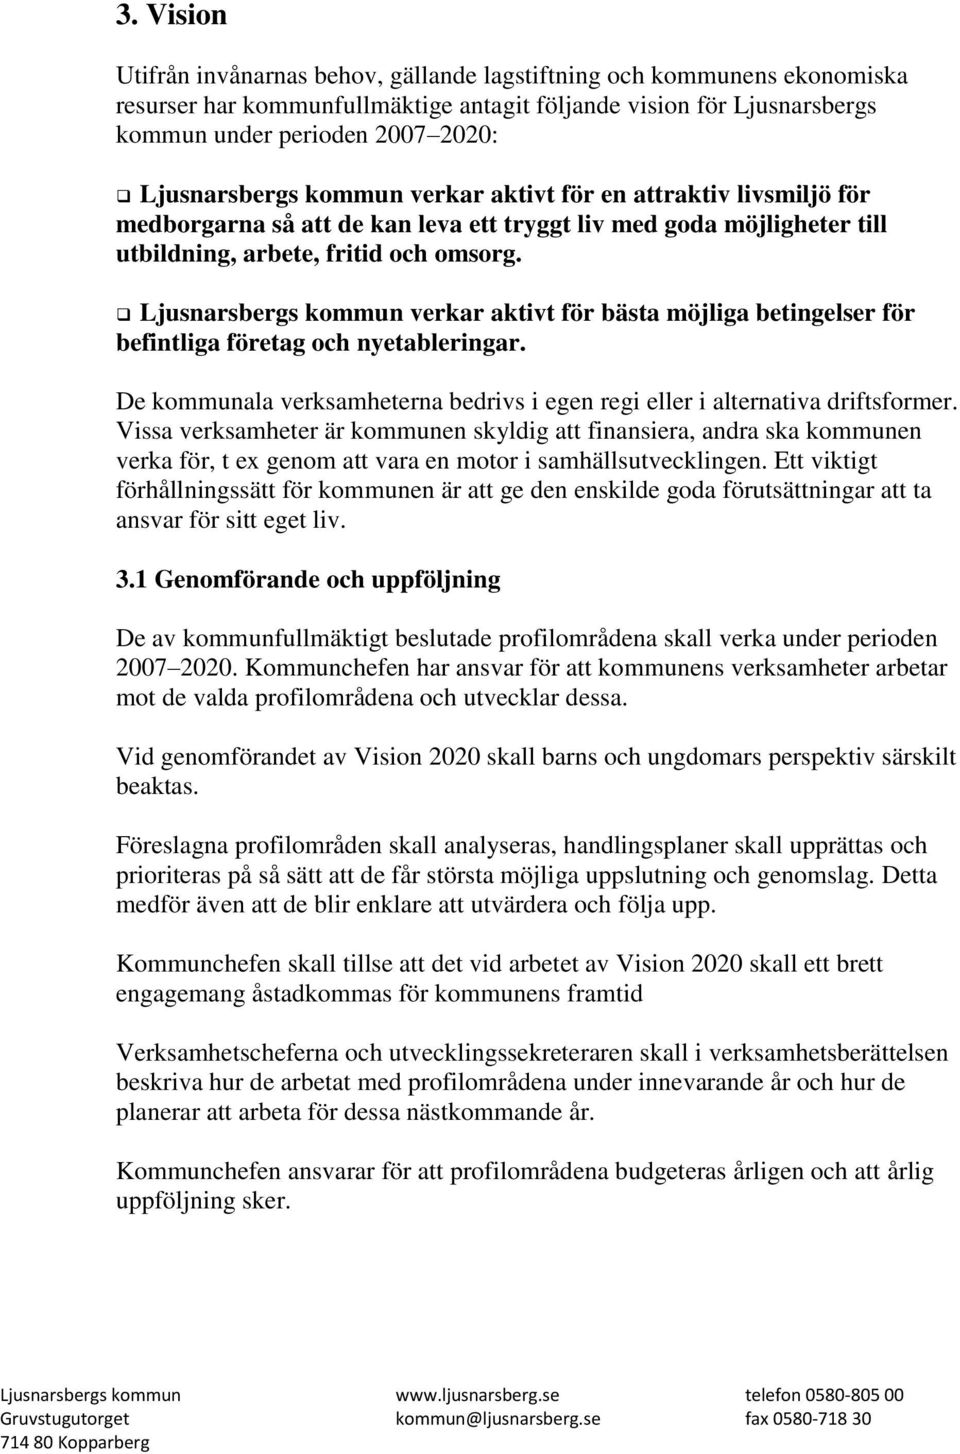 Ljusnarsbergs kommun verkar aktivt för bästa möjliga betingelser för befintliga företag och nyetableringar. De kommunala verksamheterna bedrivs i egen regi eller i alternativa driftsformer.